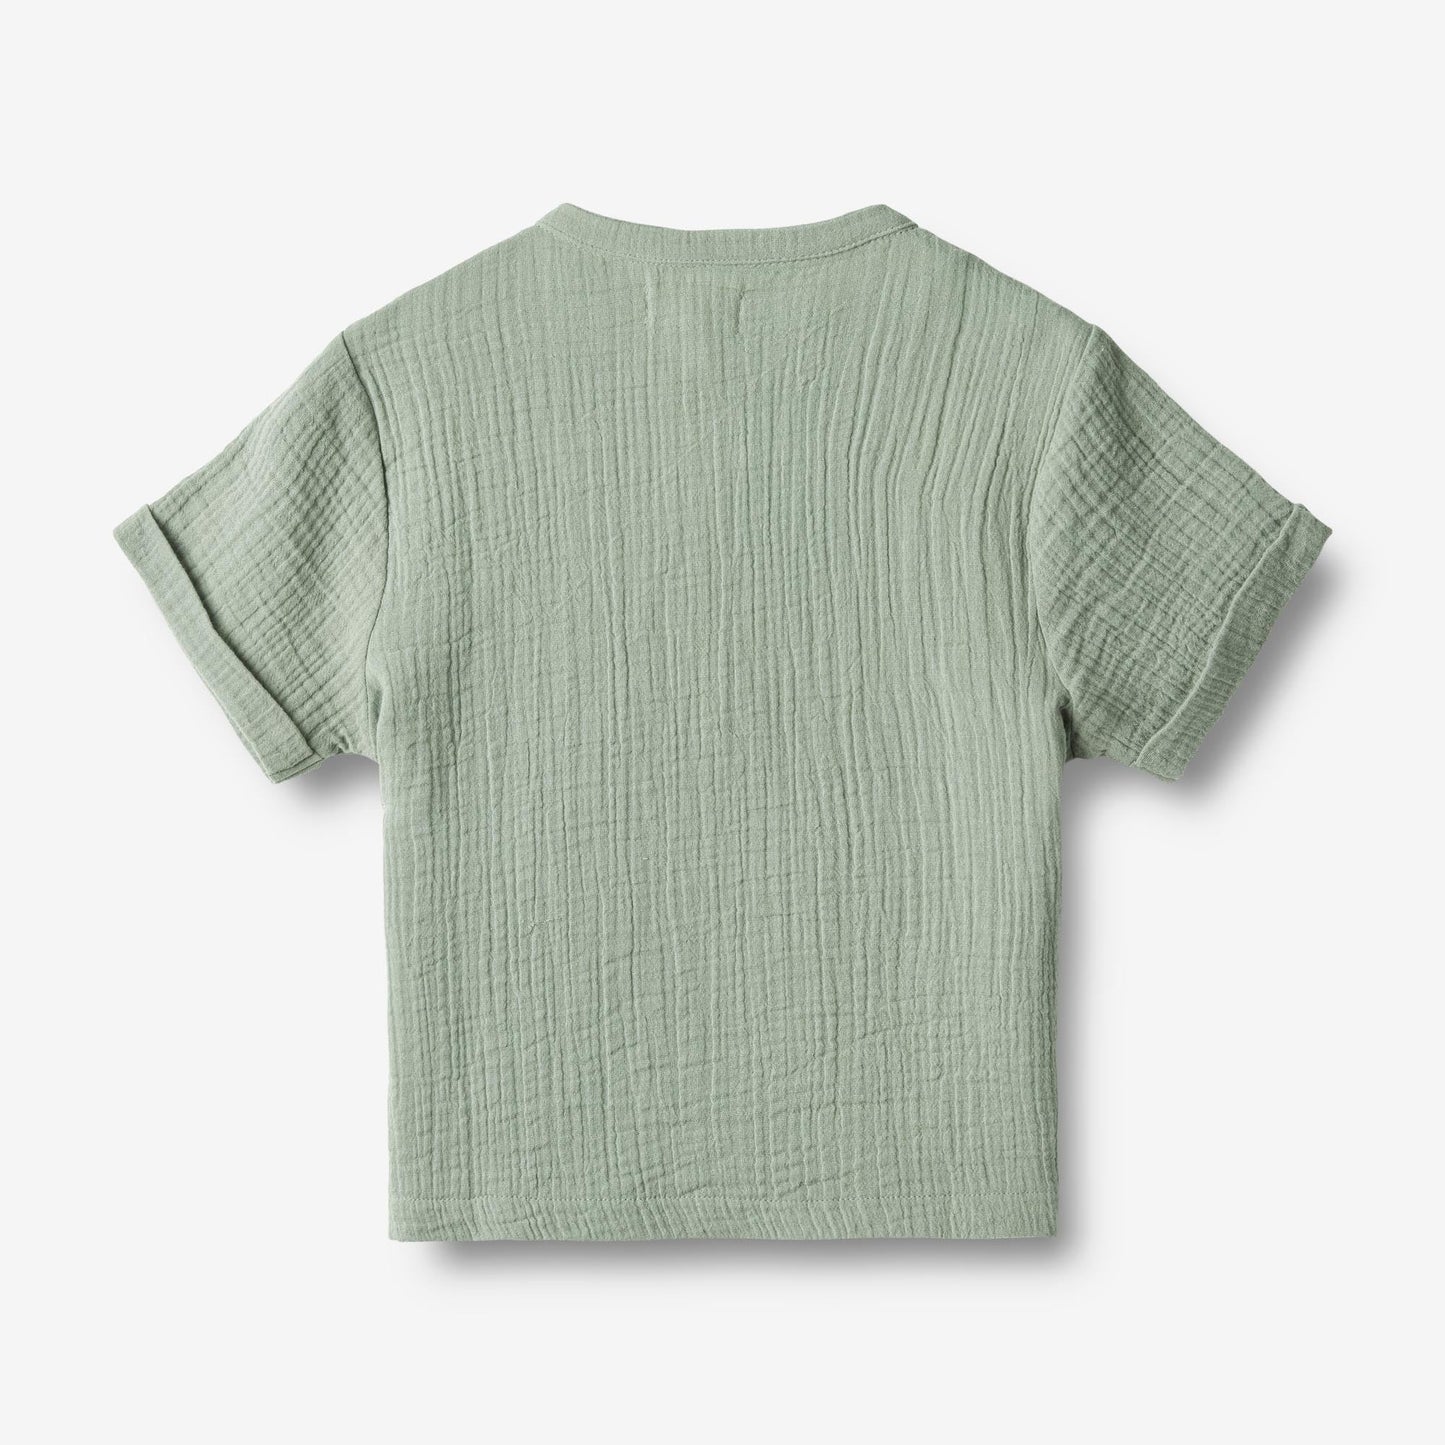 Wheat 'Svend' S/S Children's Shirt - Aquaverde